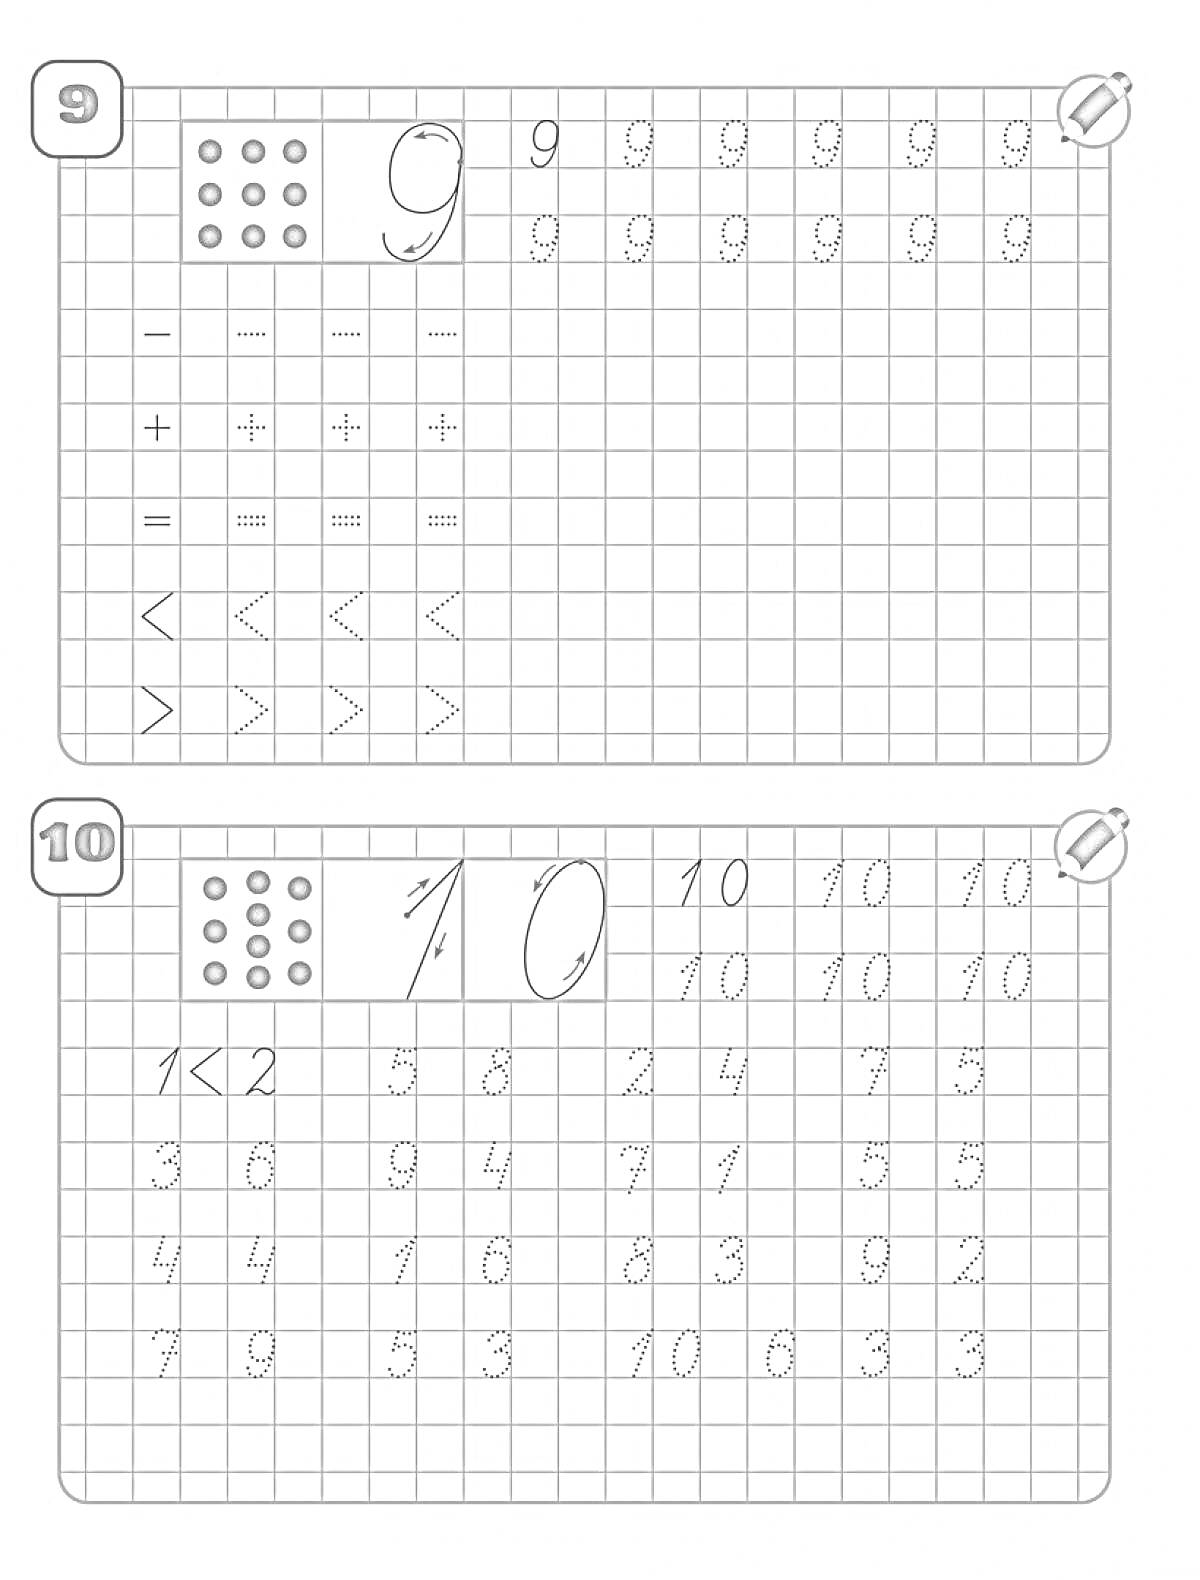 Прописи для числа 9 и 10 с арифметическими знаками и знаками сравнения